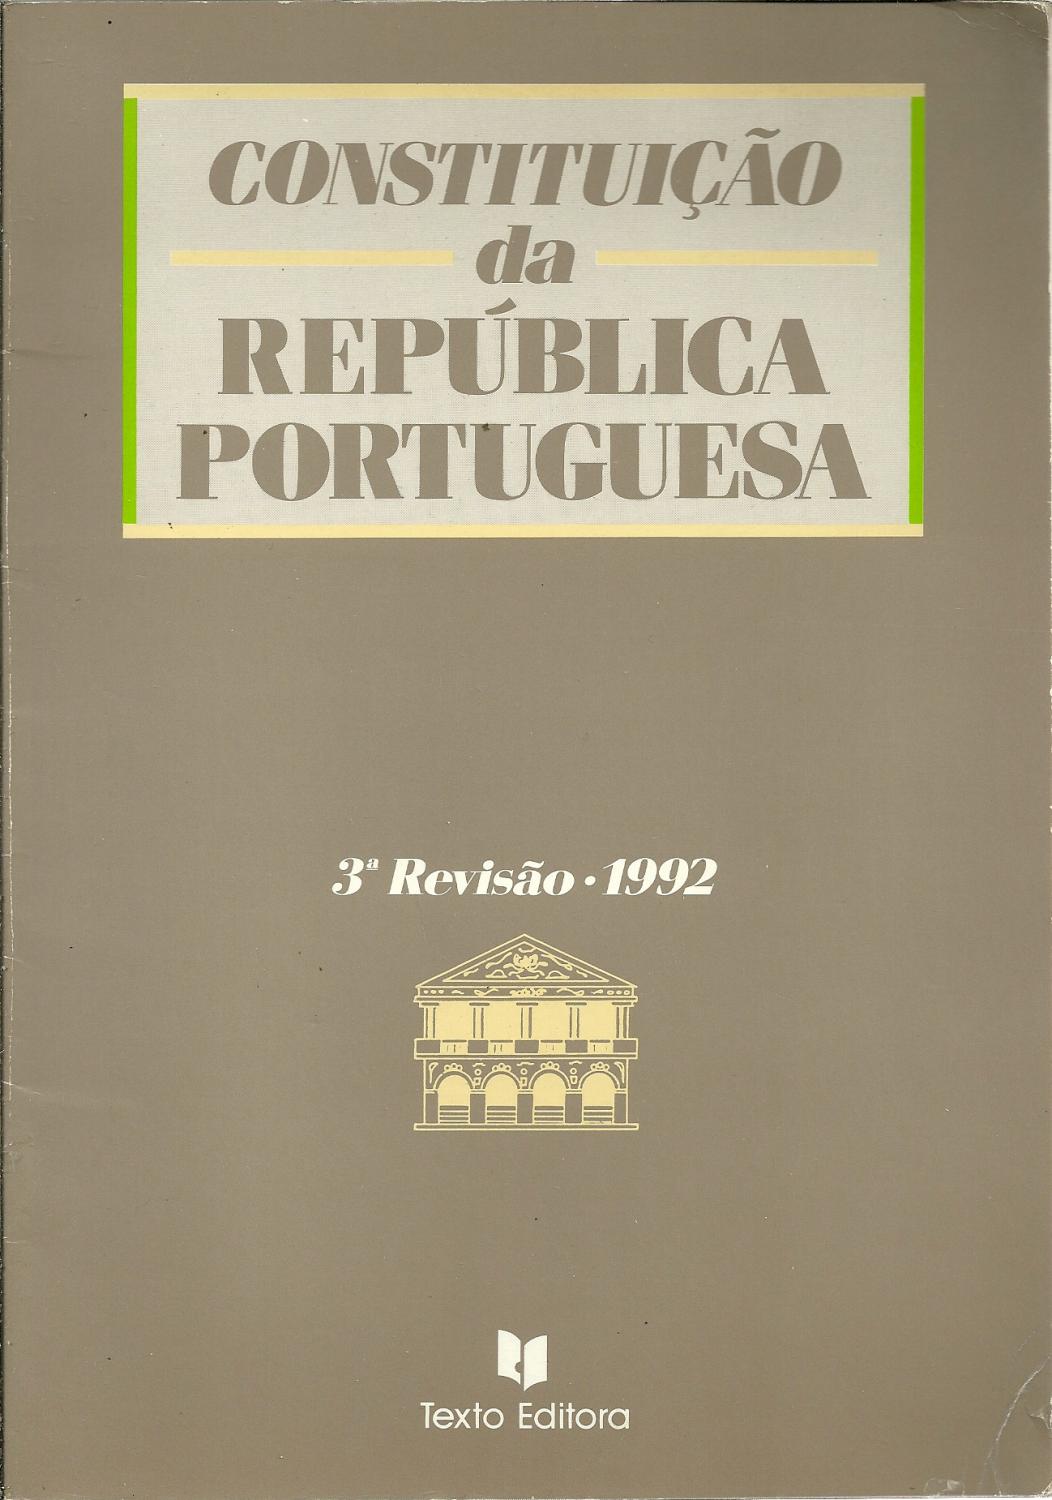 CONSTITUIÇÃO DA REPÚBLICA PORTUGUESA. 3ª Revisão